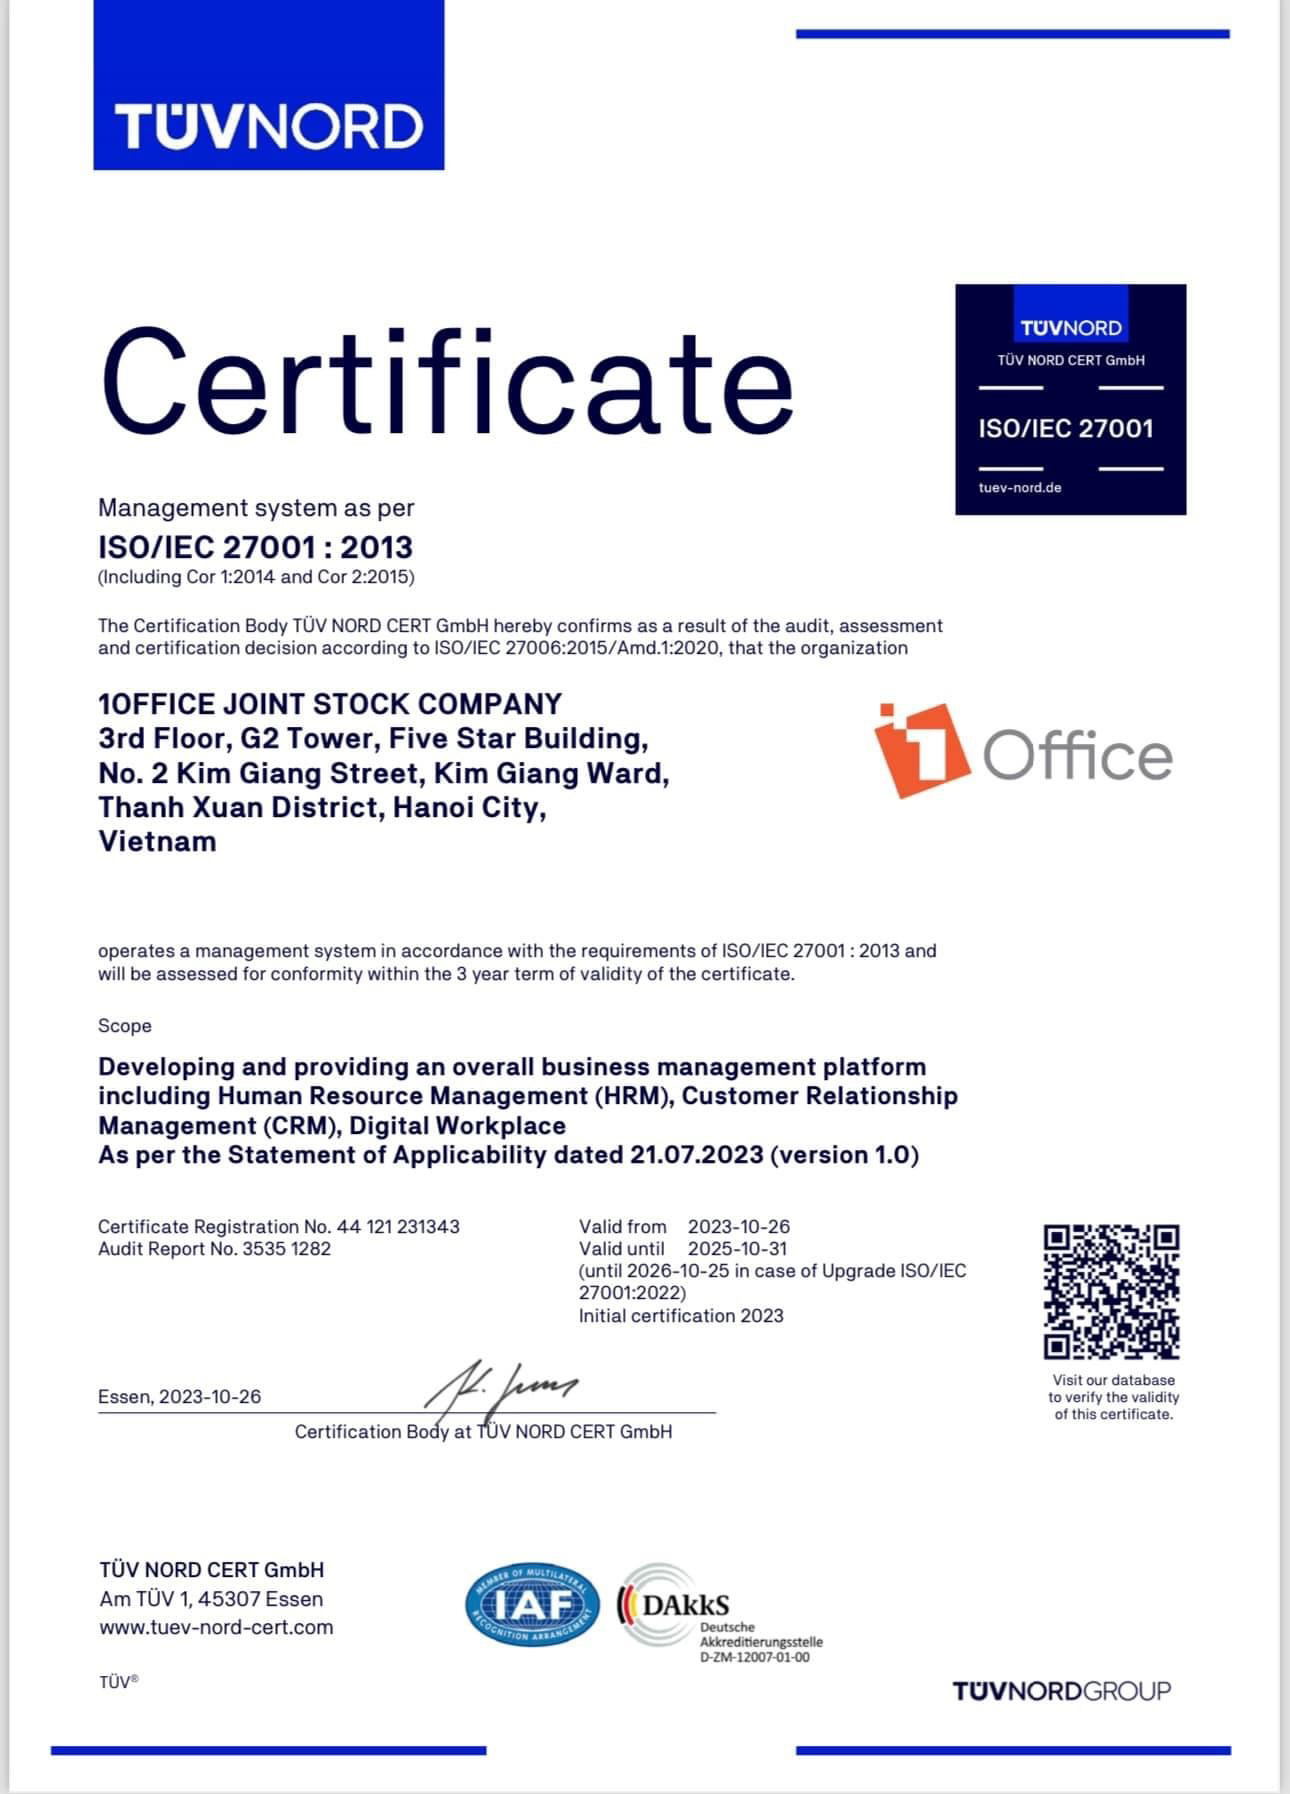 Giấy chứng nhận từ TUV NORD: 1Office - Hệ thống vận hành quản lý chất lượng theo tiêu chuẩn ISO/IEC 27001:2013